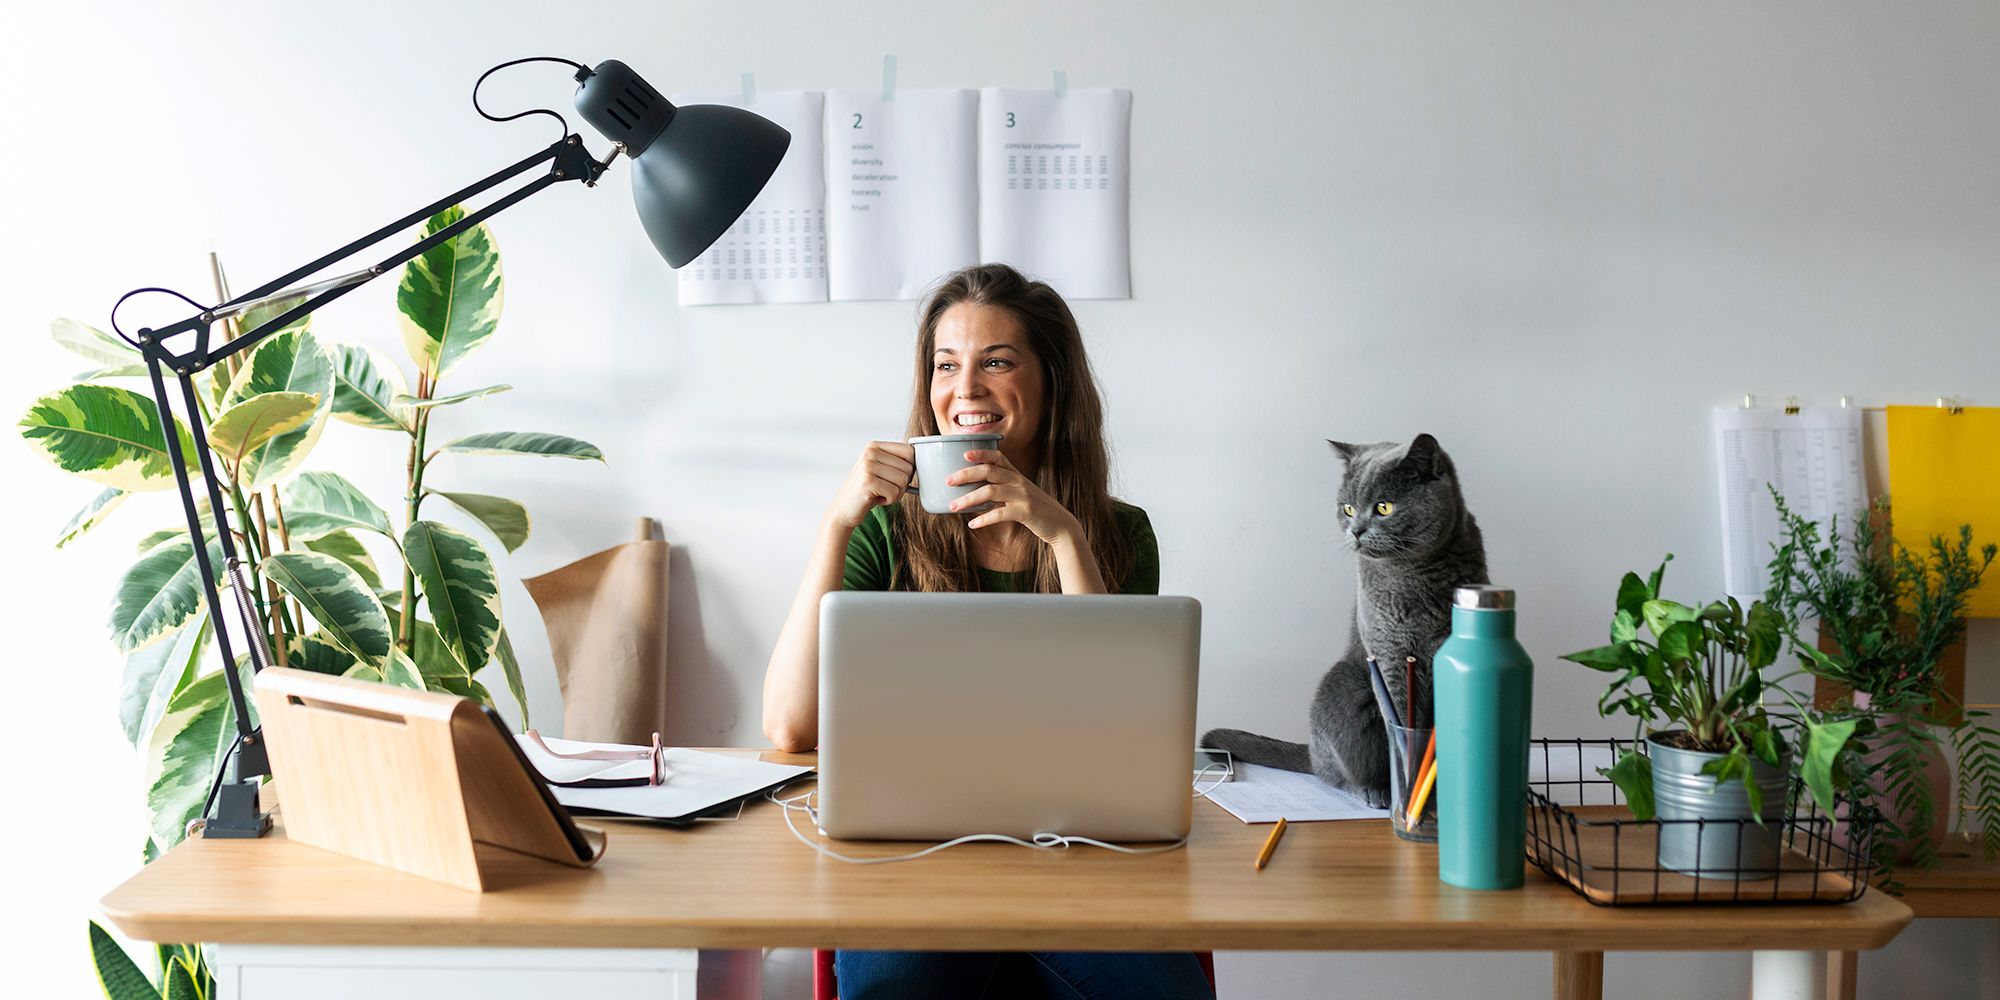 Bright Basics Wireless Desk Lamp for Home Office 